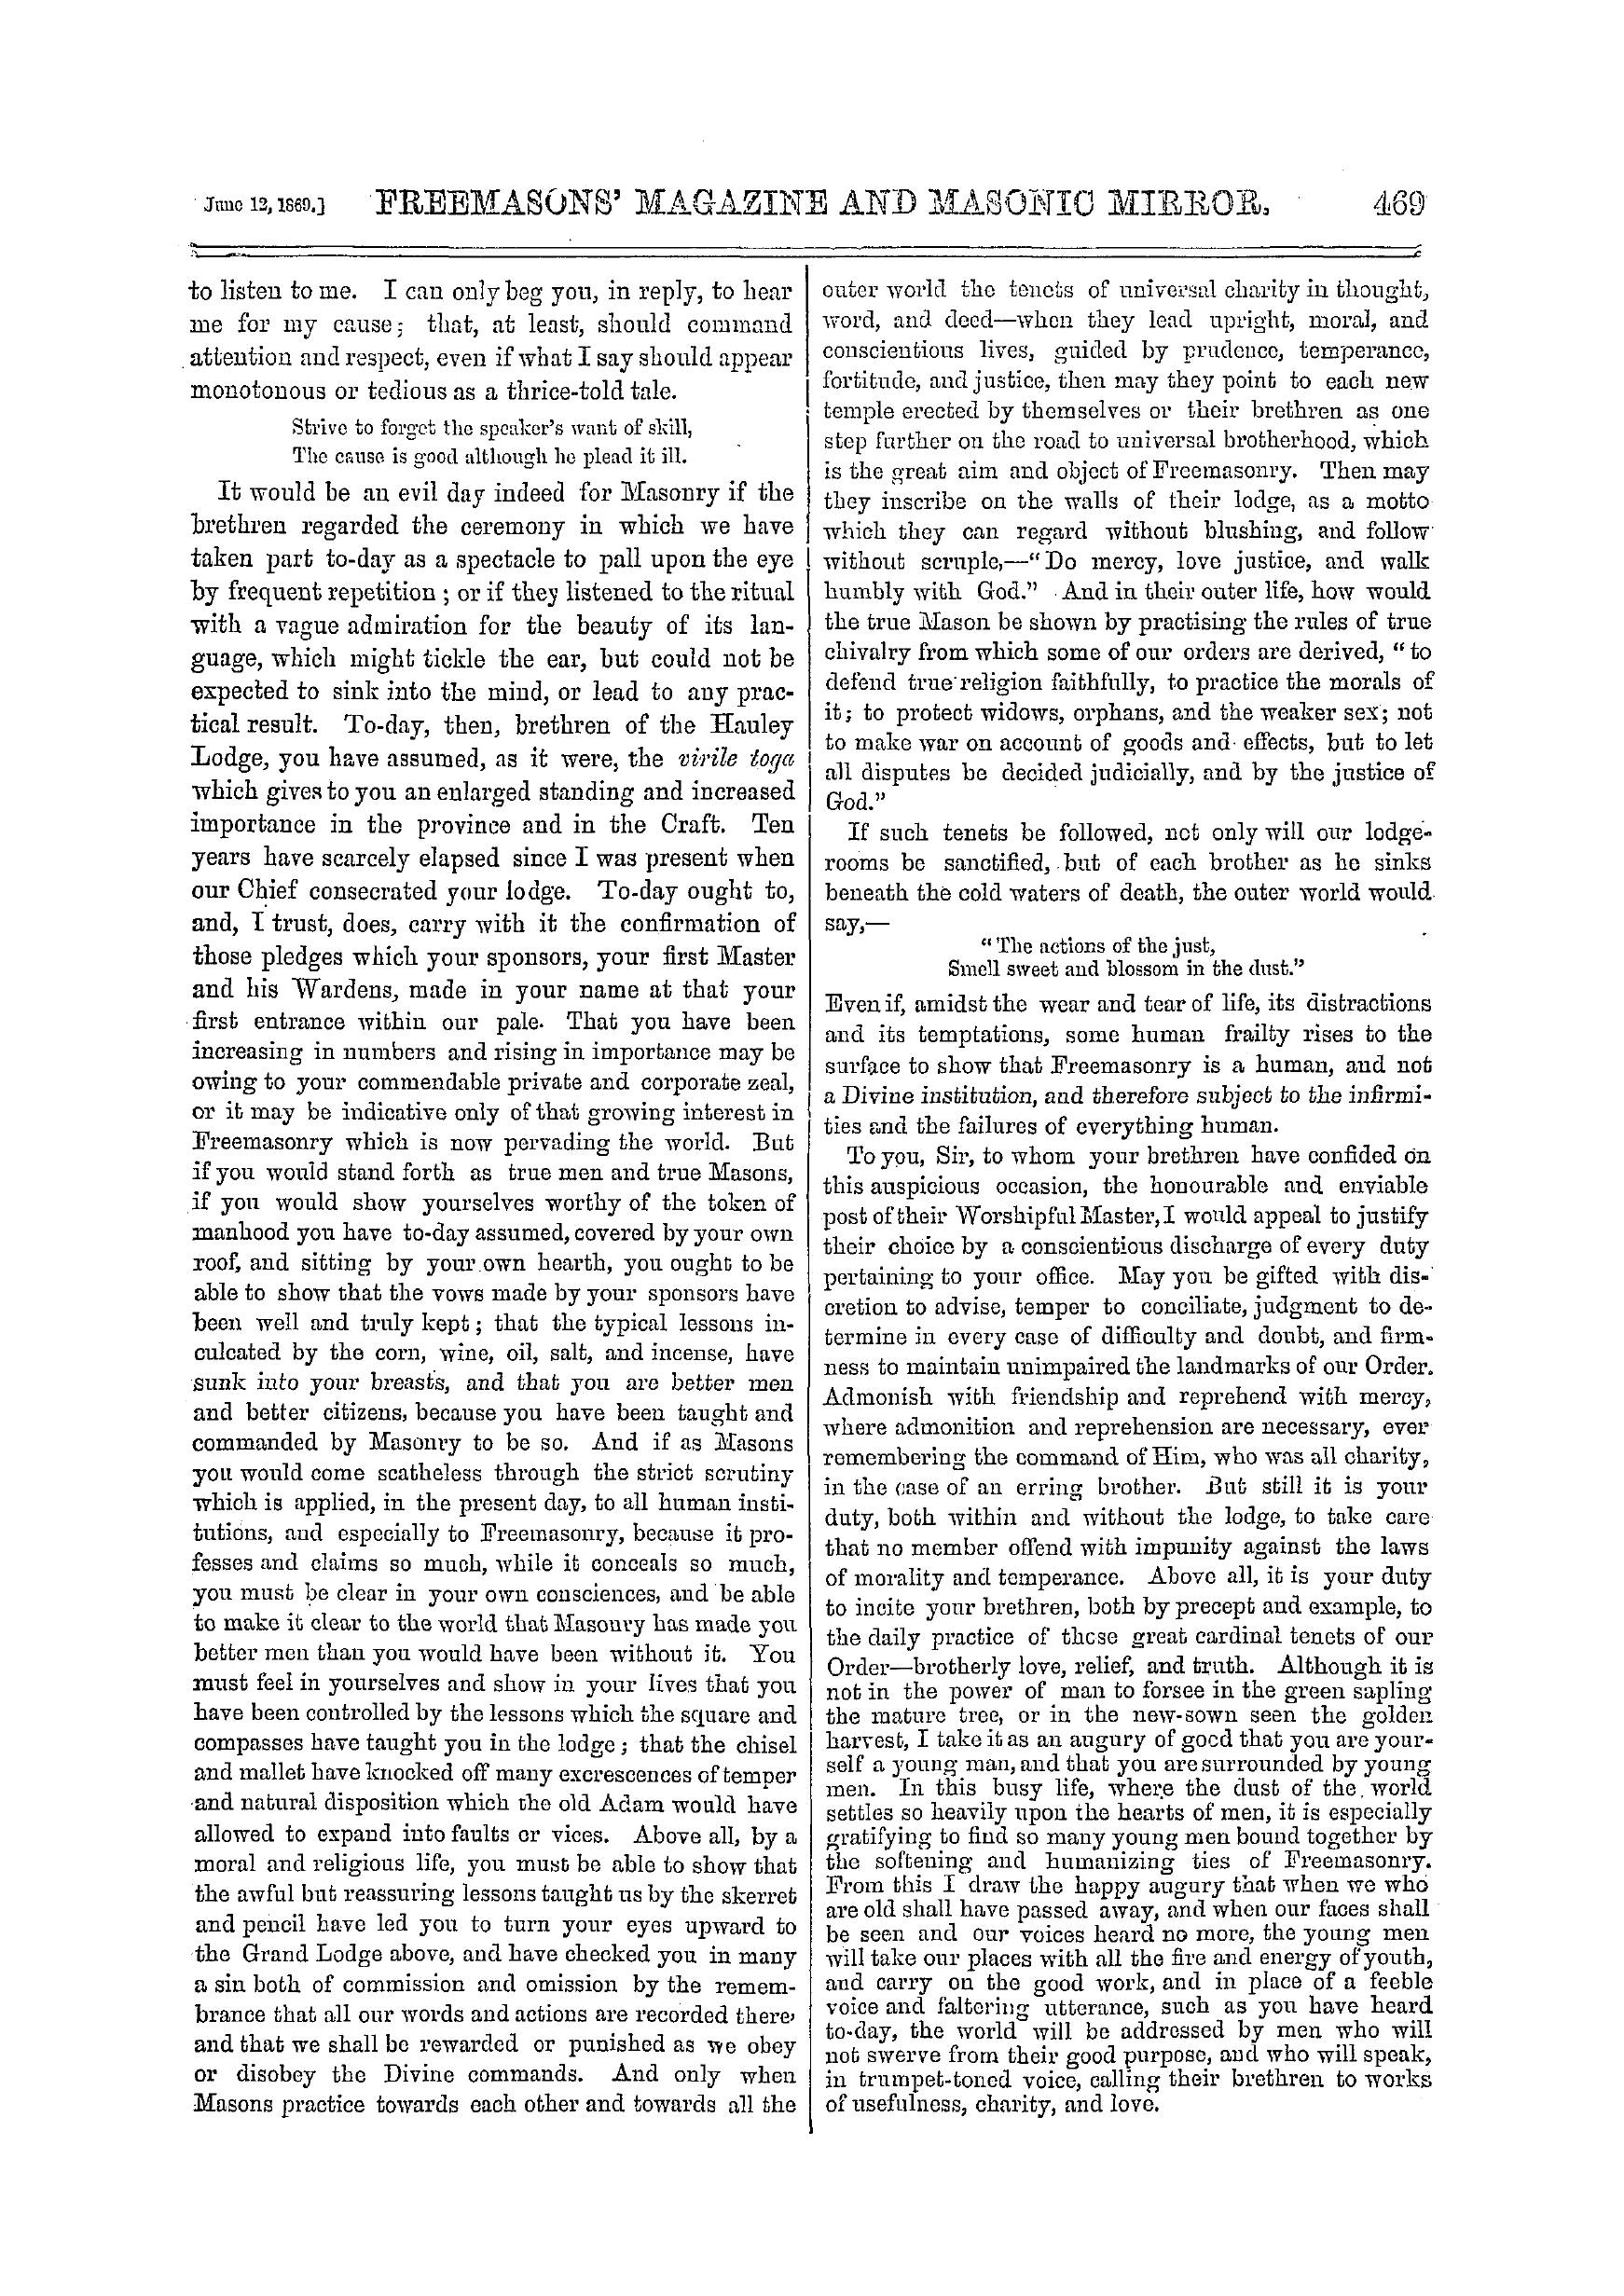 The Freemasons' Monthly Magazine: 1869-06-12 - Oration.